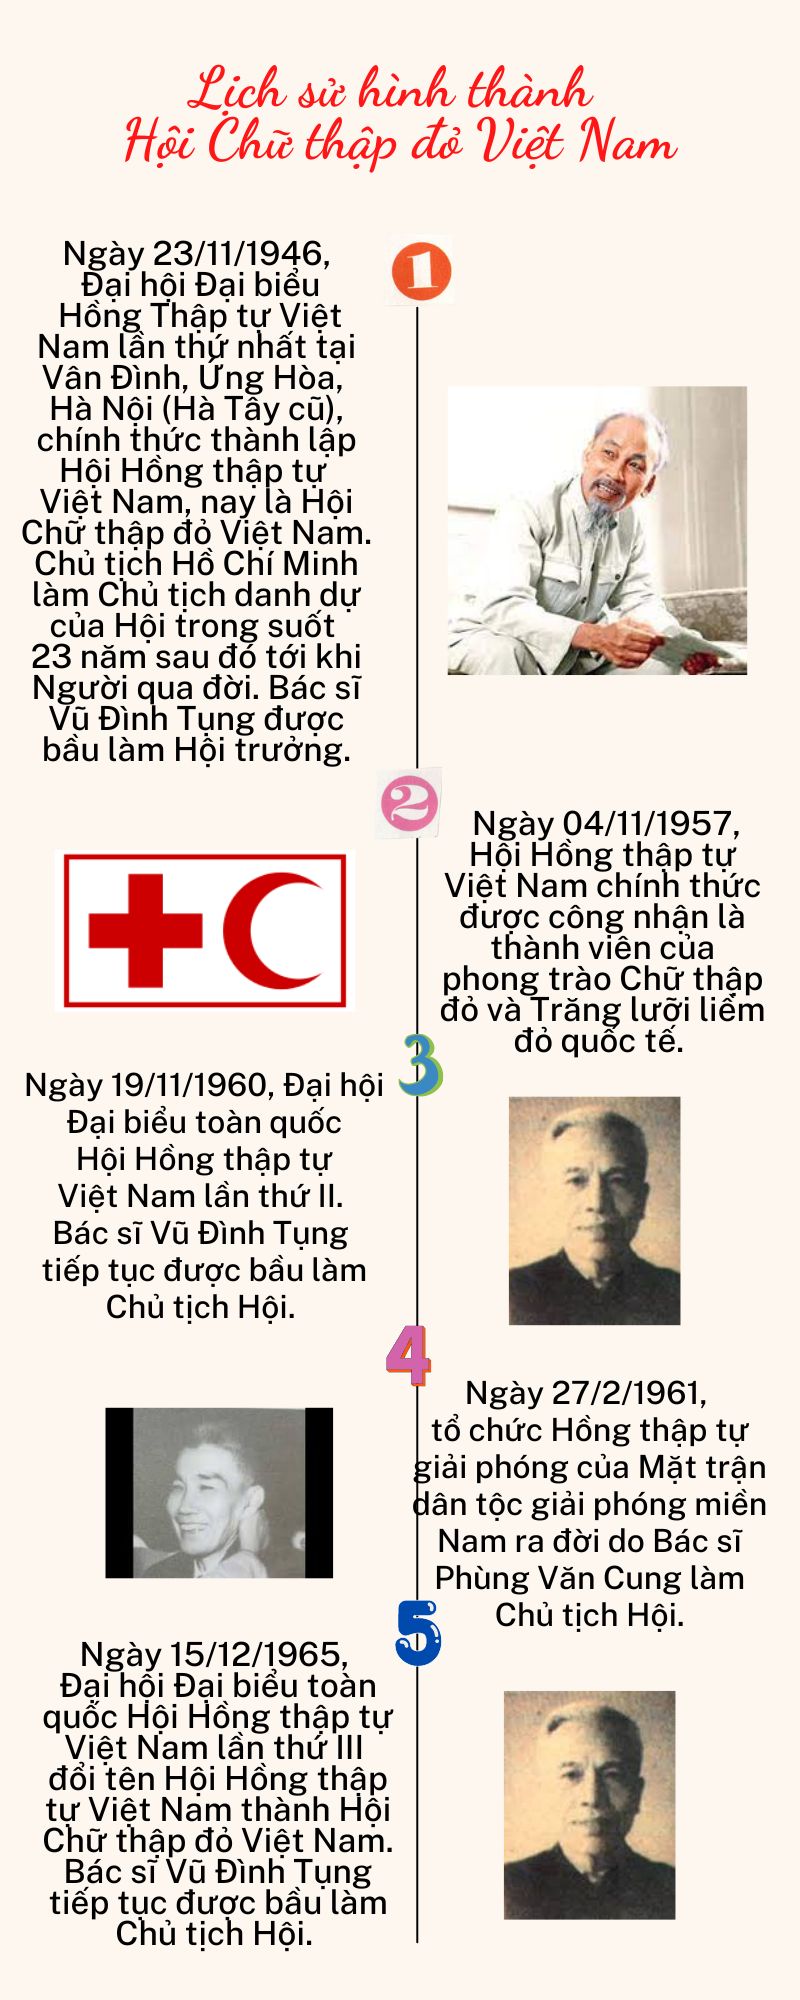 Hội Chữ thập đỏ Việt Nam luôn nỗ lực bảo vệ biểu tượng Chữ thập đỏ